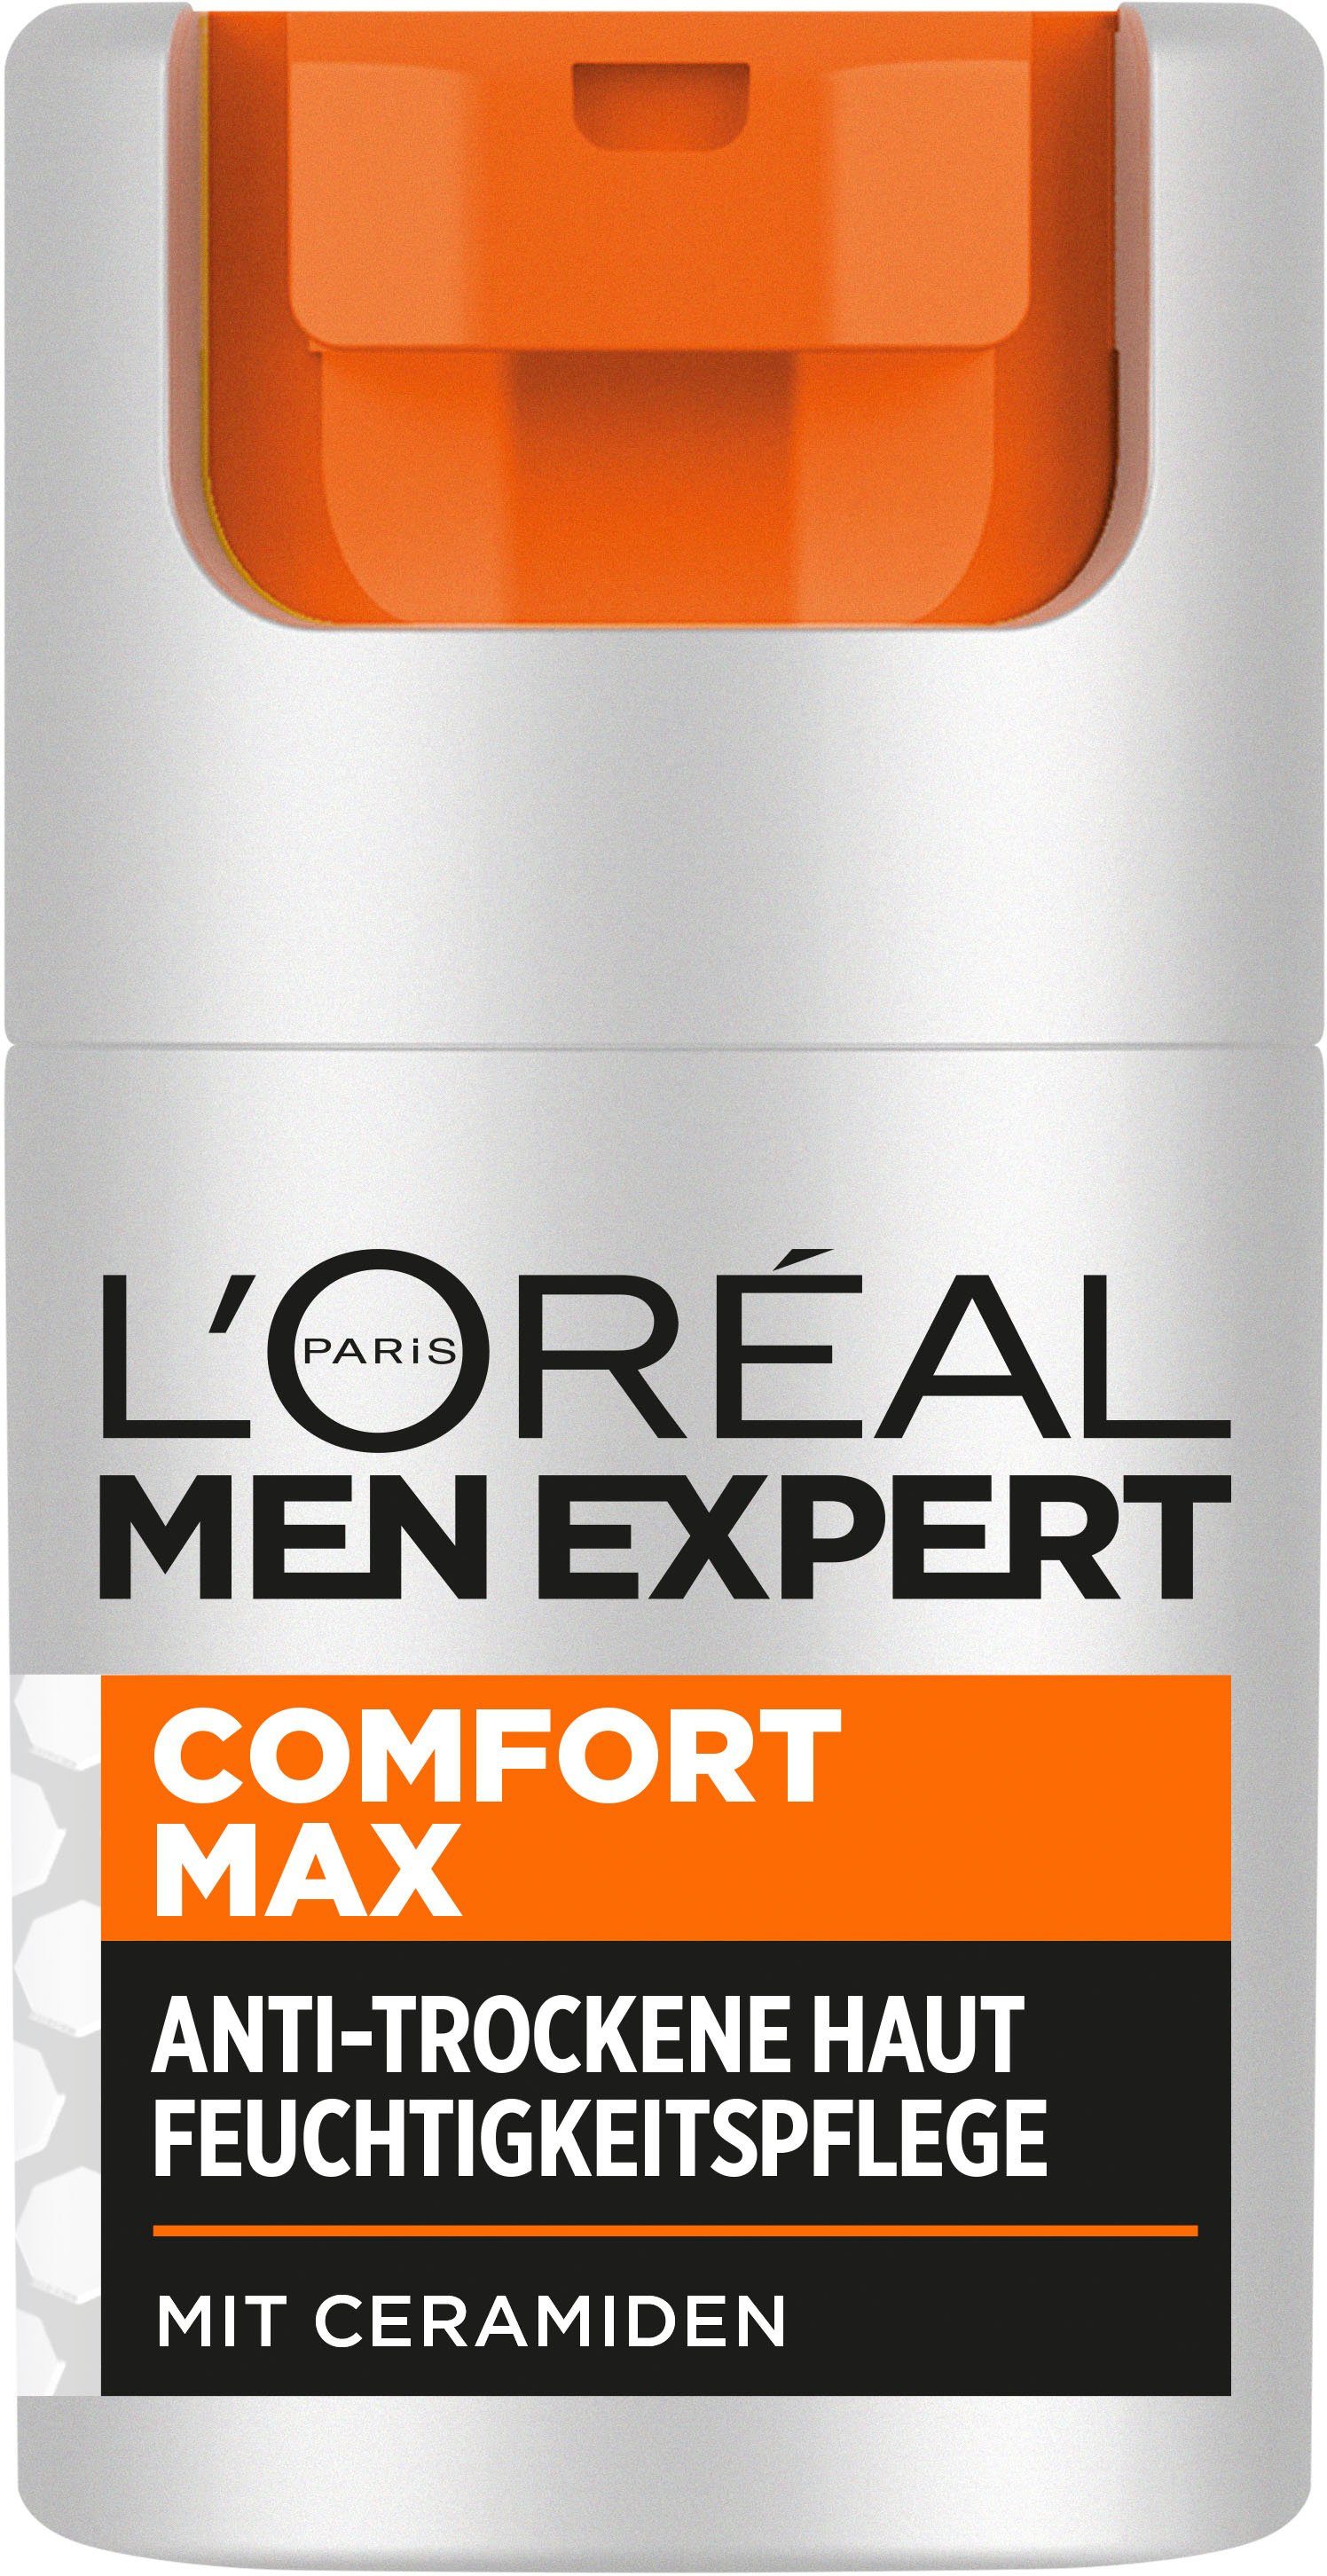 L'ORÉAL PARIS MEN EXPERT Expert L'Oréal Comfort Feuchtigkeitspflege Gesichtsgel Max Men